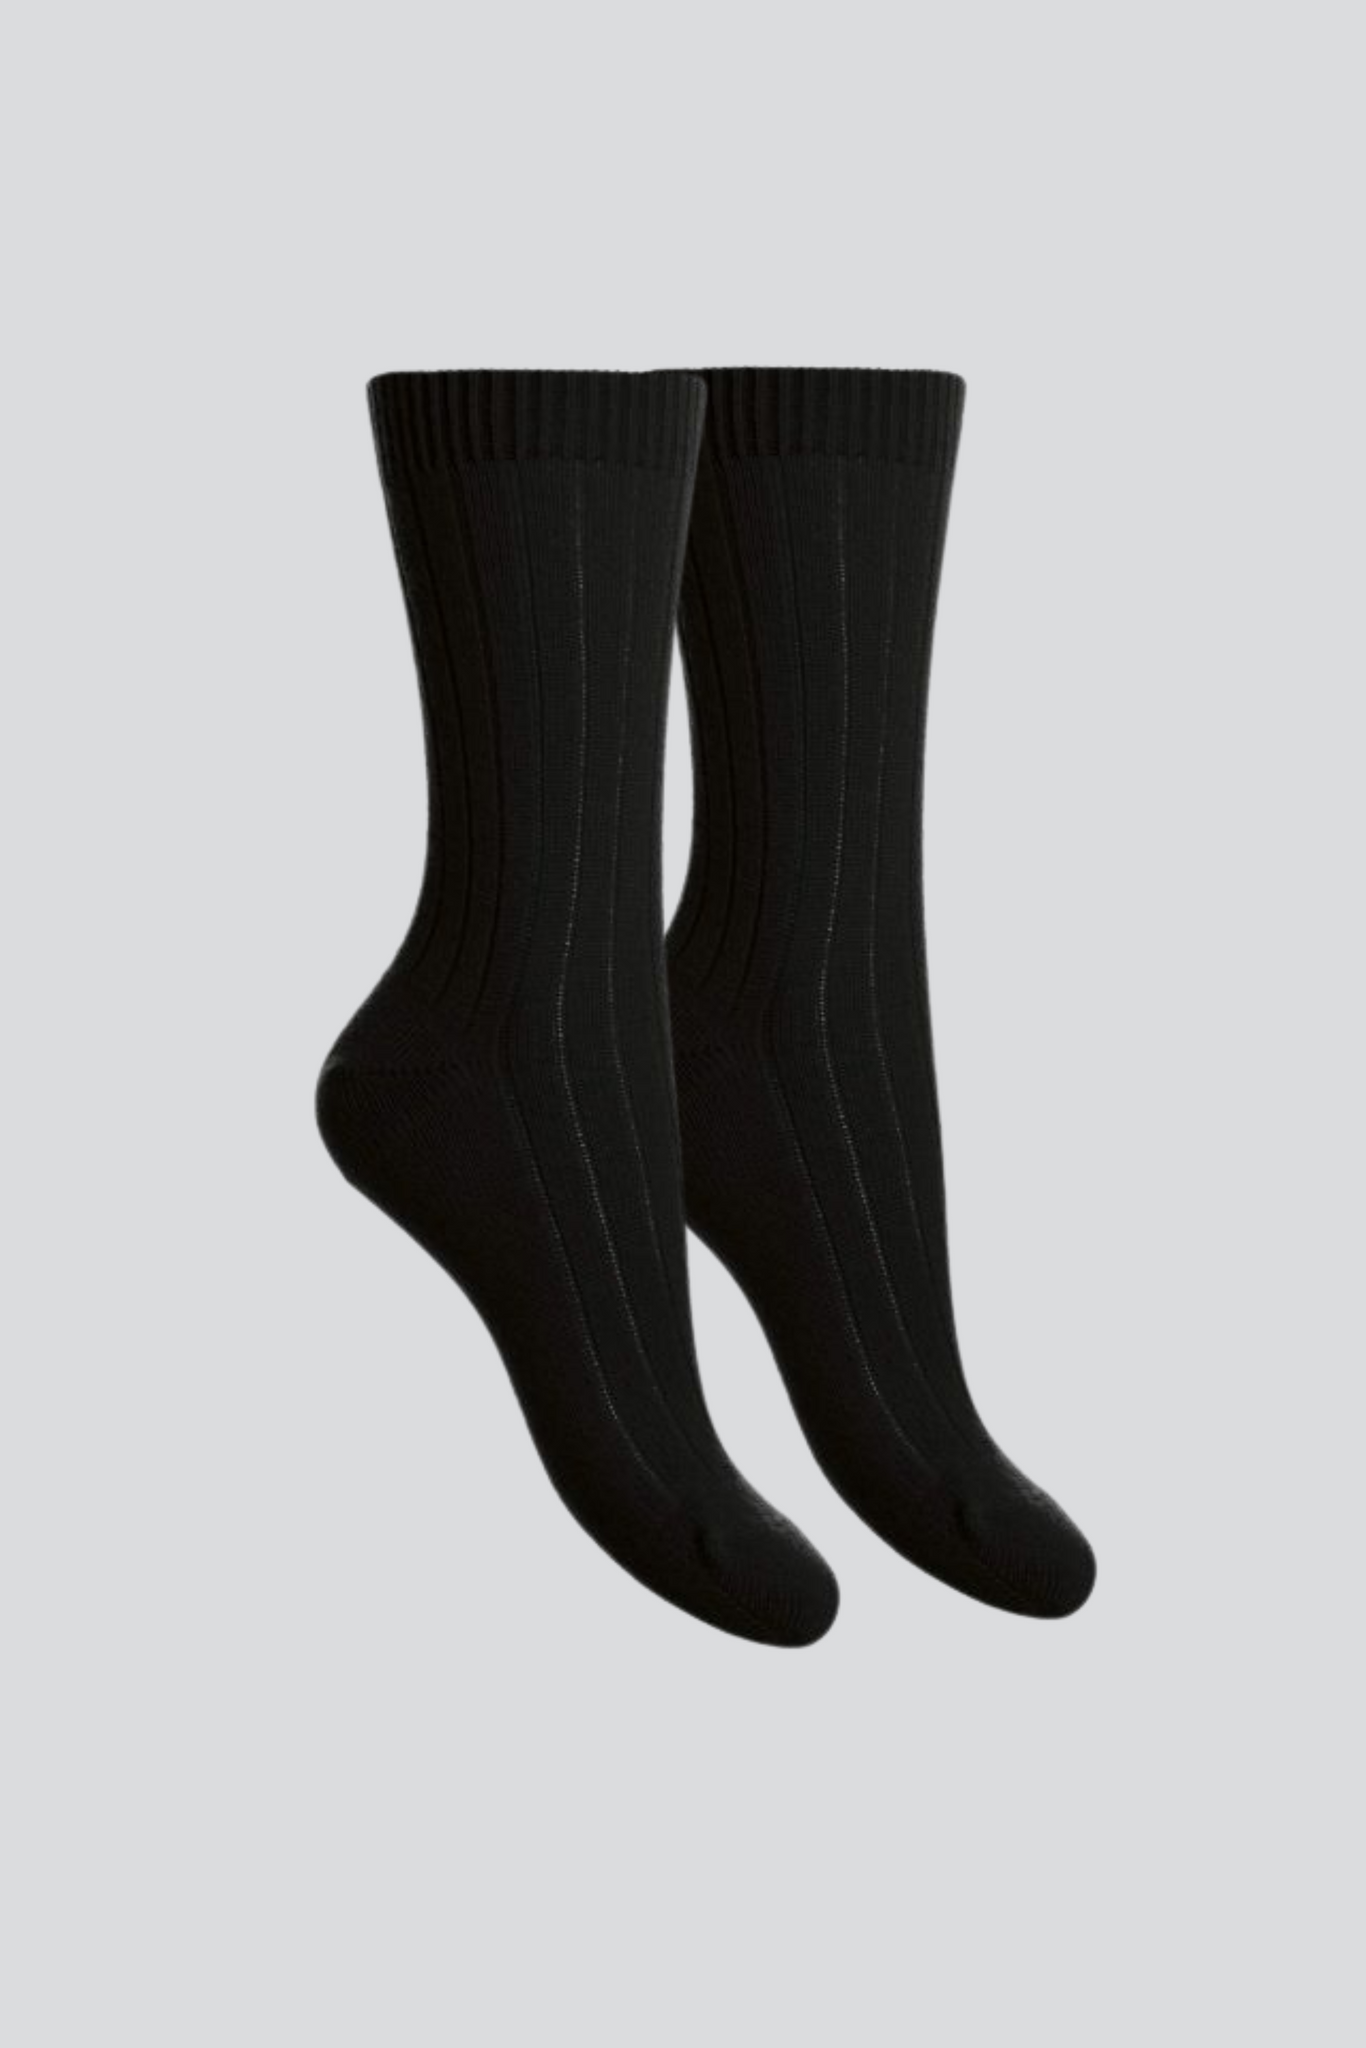 Lola Cashmere Comfort Sleep Socks - Black, Stems